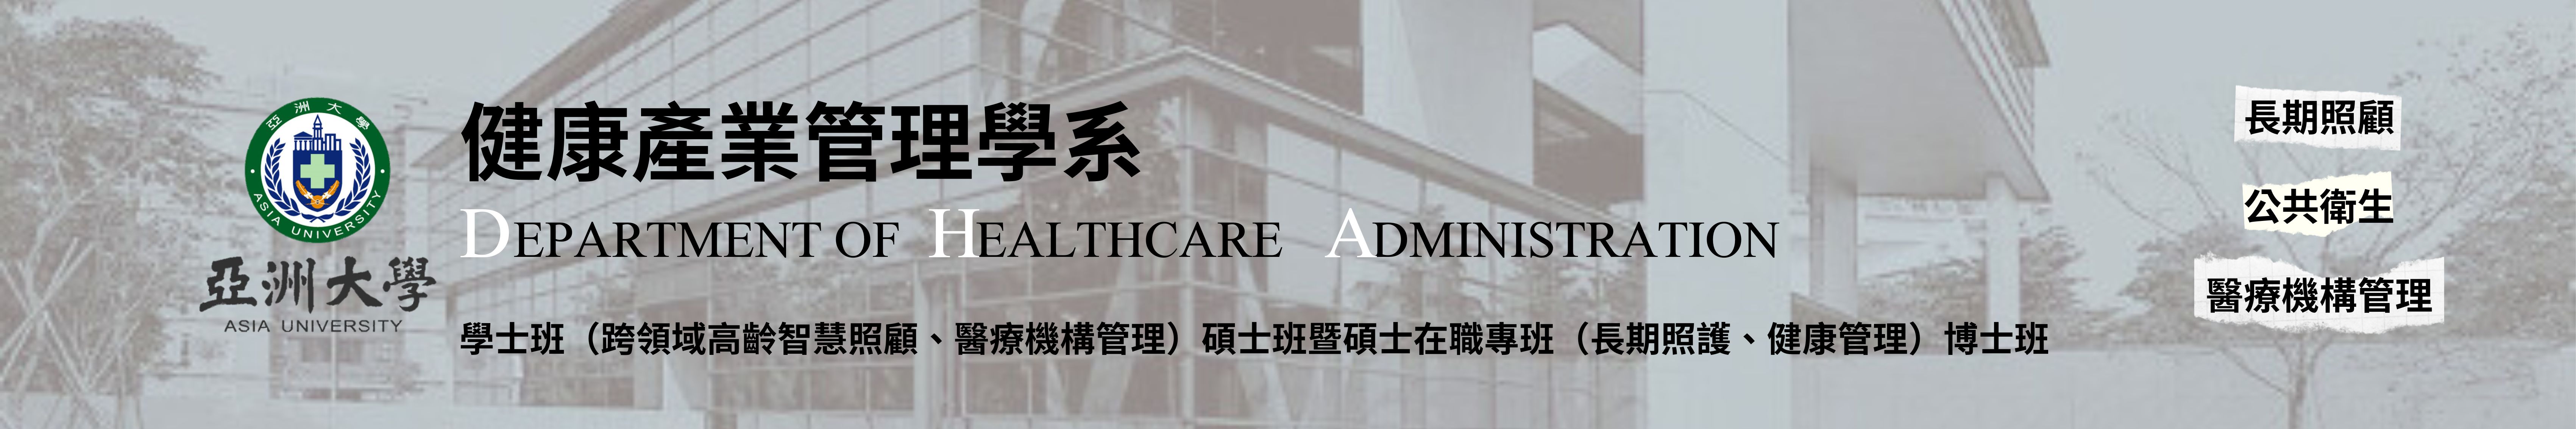 亚洲大学健康产业管理学系的Logo